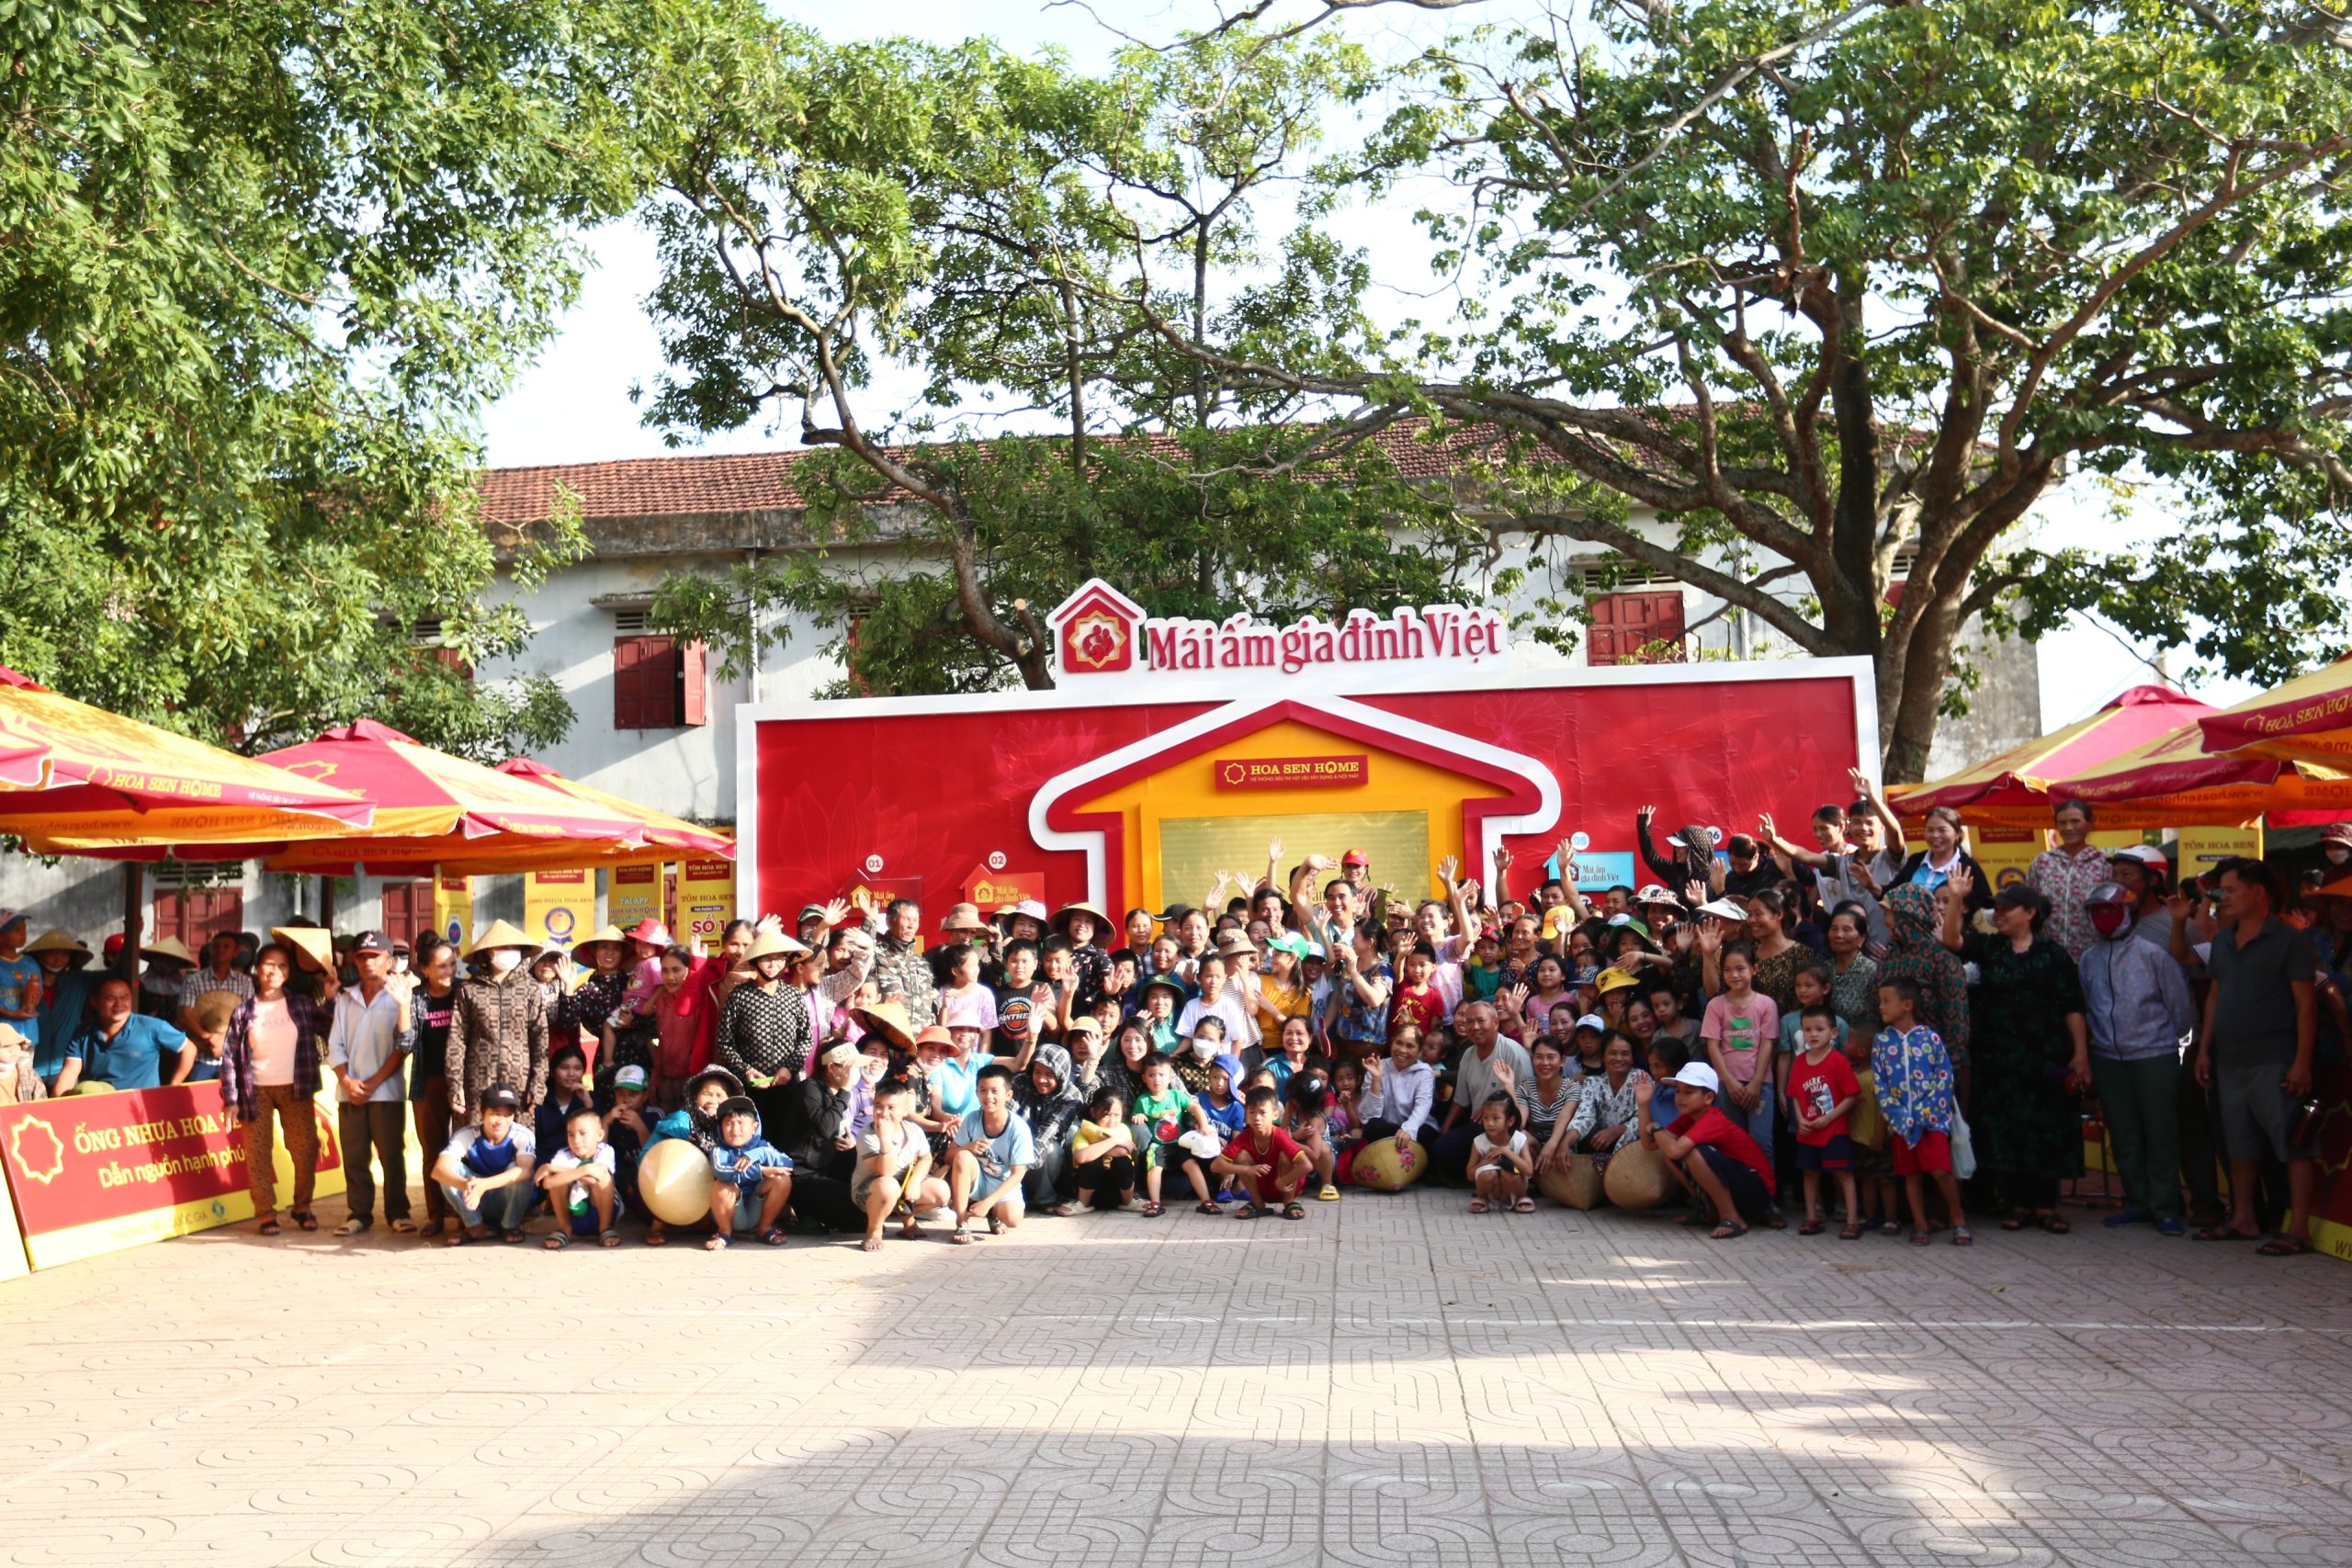 Hàng trăm người dân xứ Nghệ cùng đến cổ vũ cho các em nhỏ mồ côi trong “Mái ấm gia đình Việt”